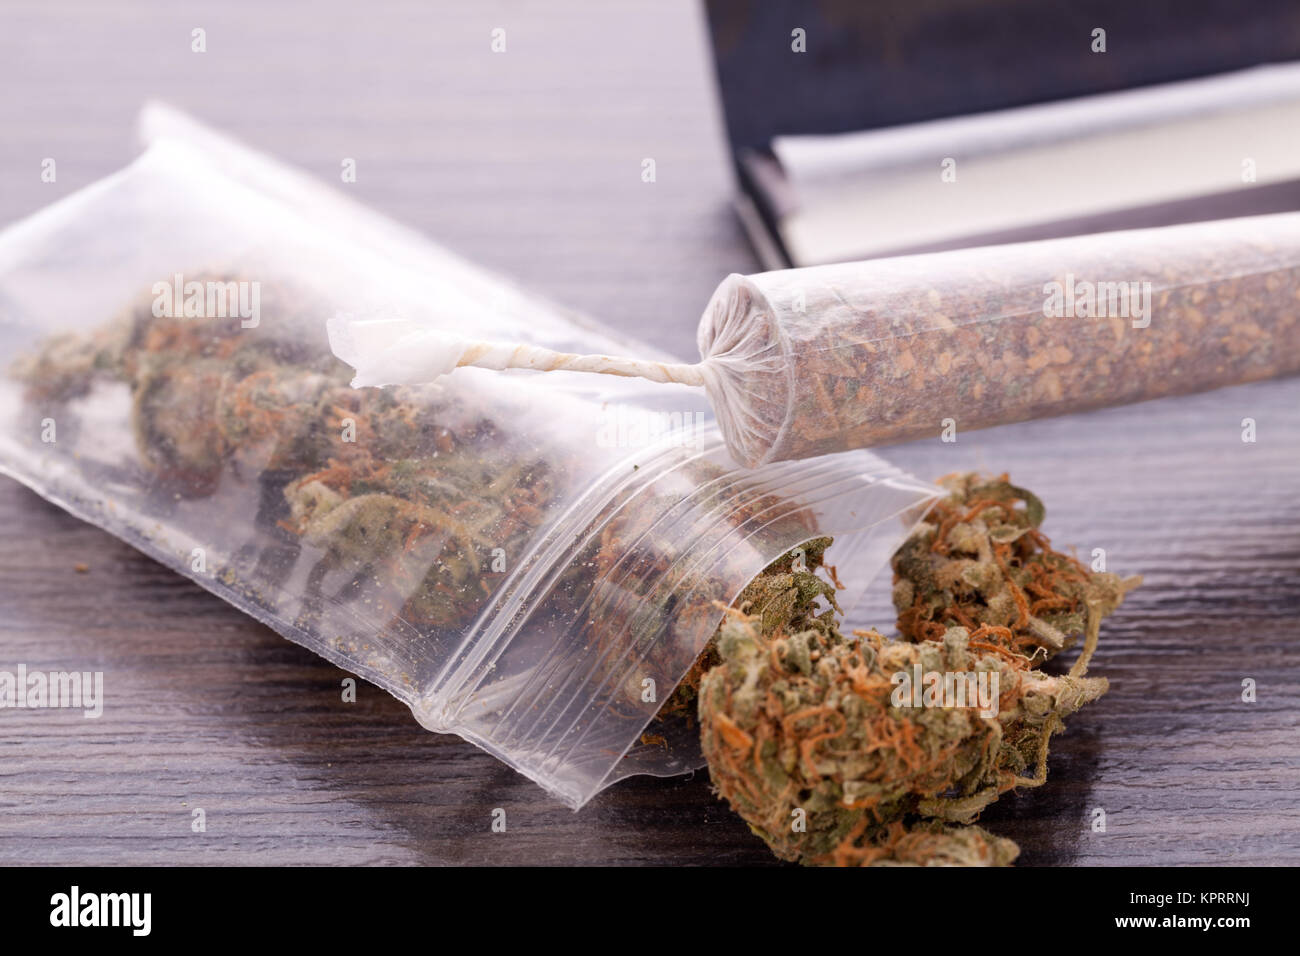 Cannabis marihuana mit Papier und Gemeinsame zum Drehen / Rauschmittel als Nahaufnahme Stockfoto